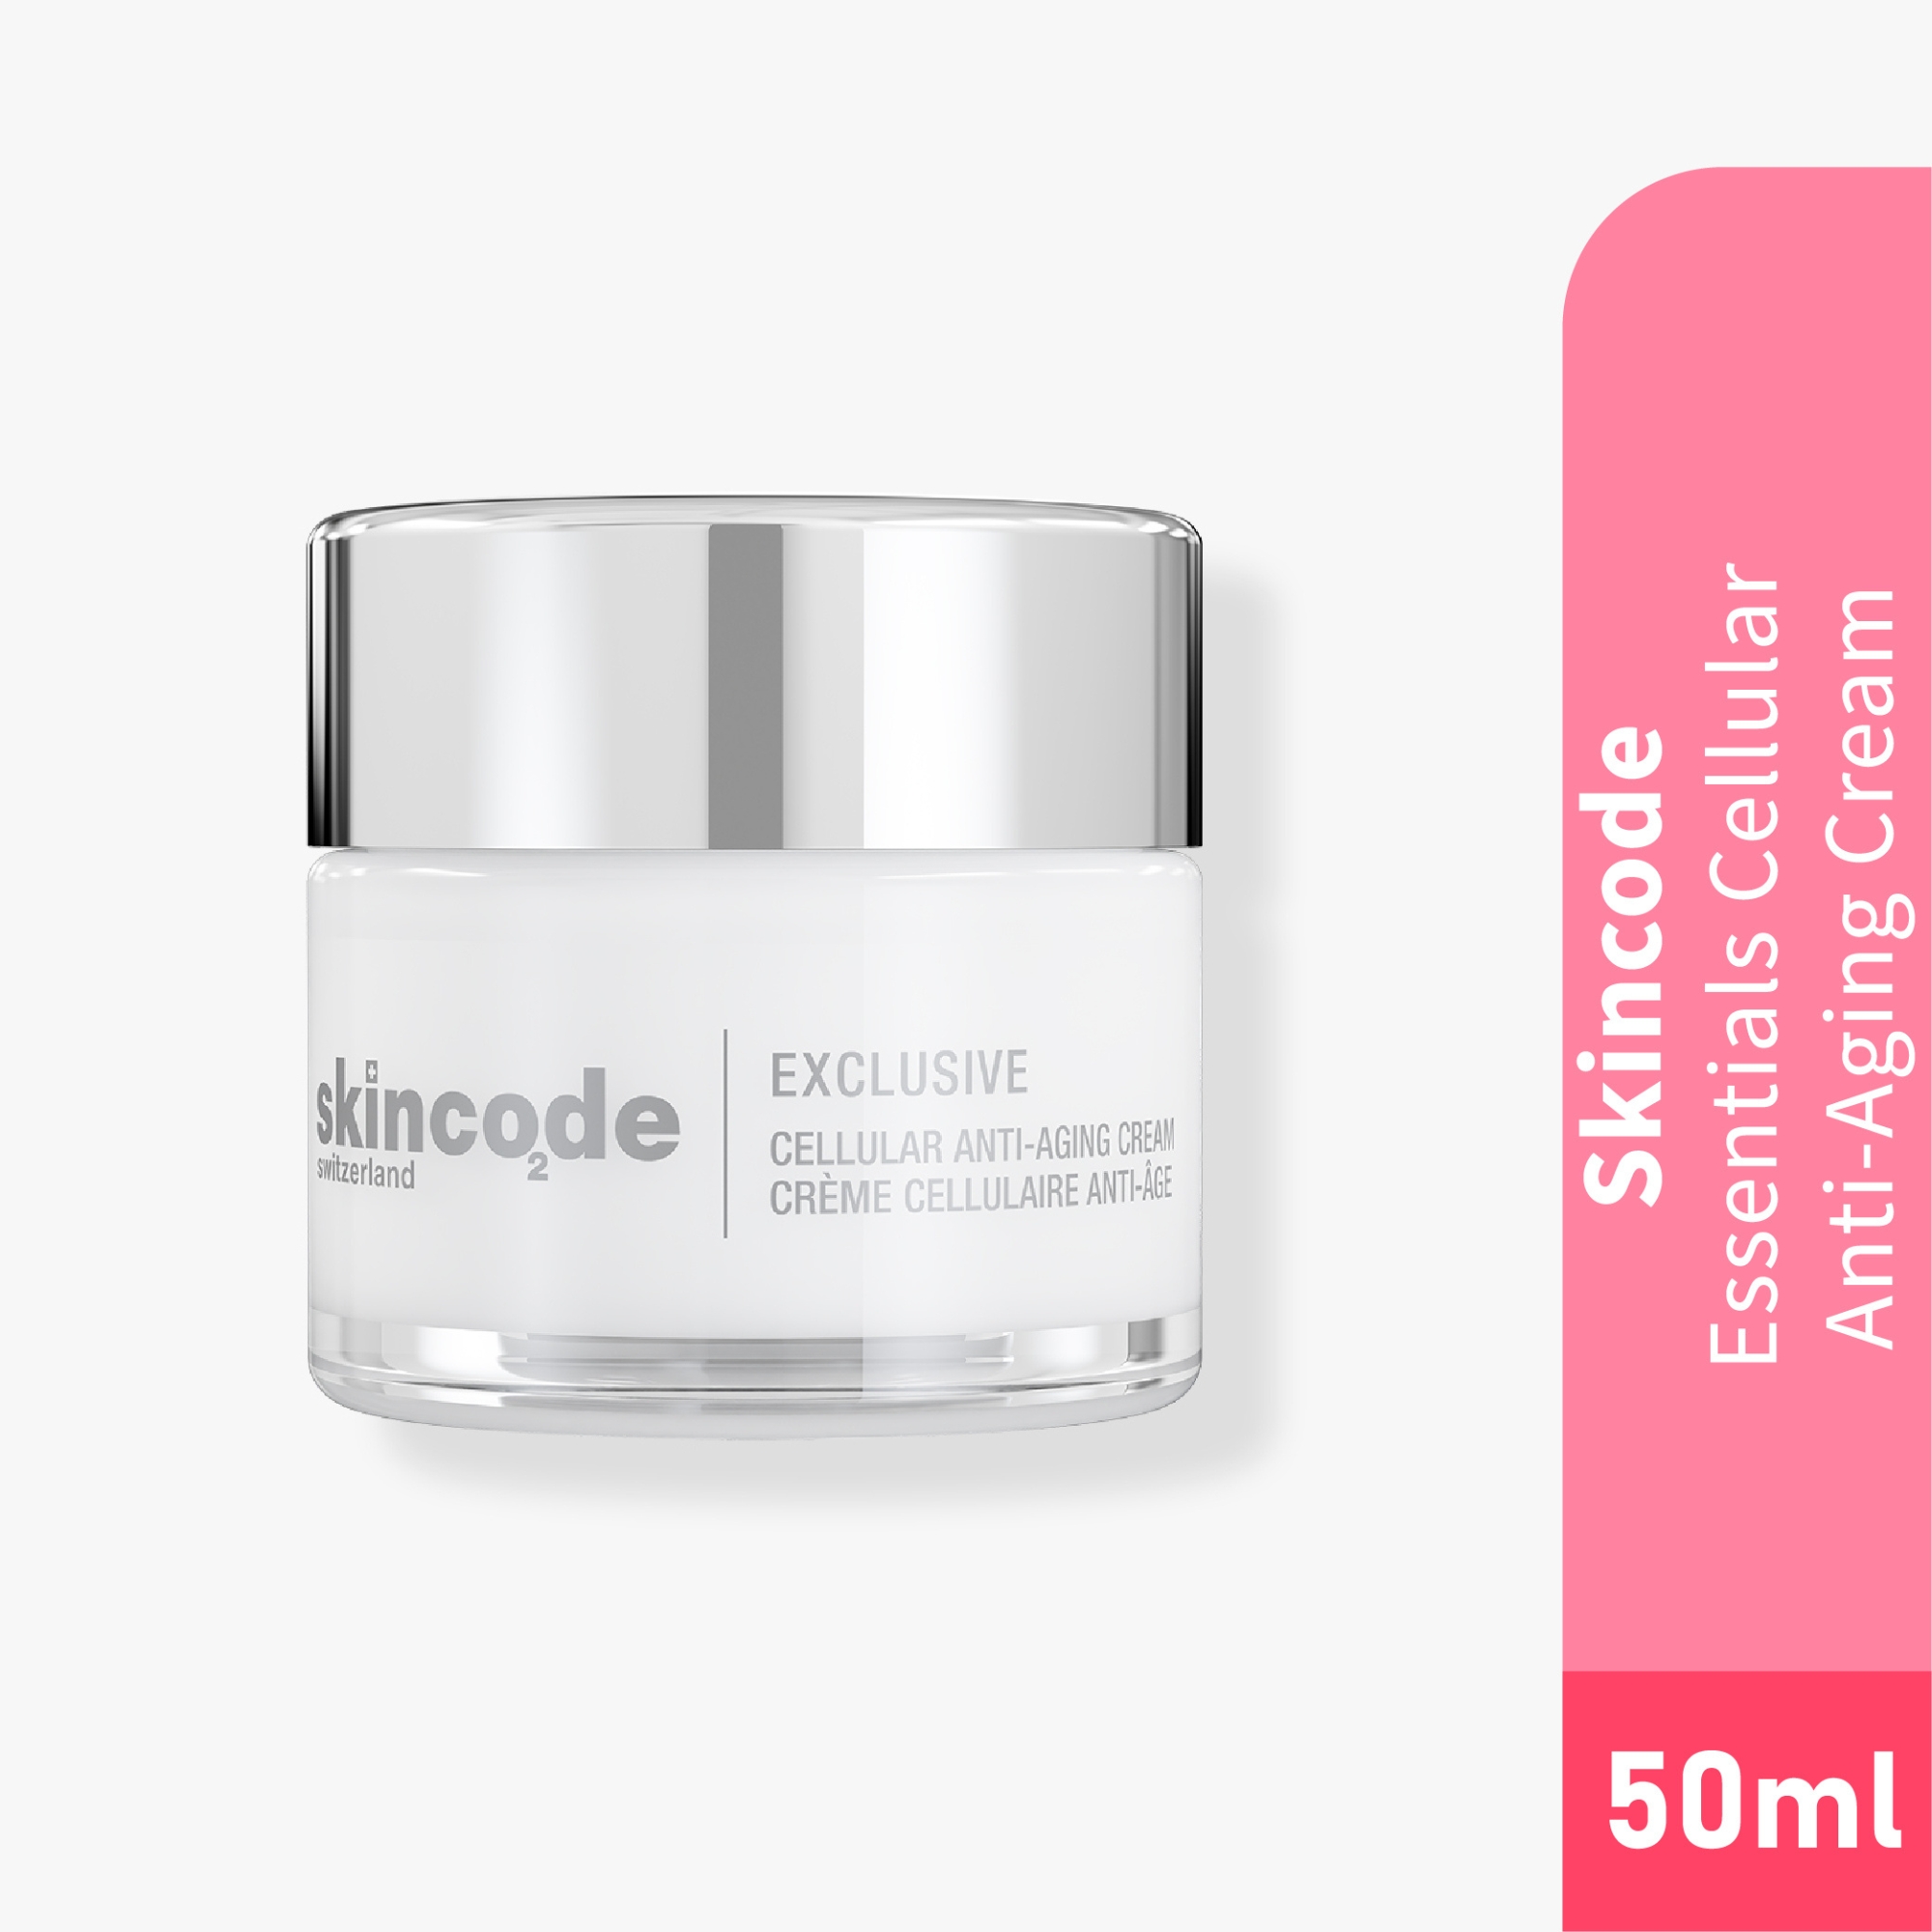 Skincode Exclusive Cellular Anti-Aging Cream 50ml